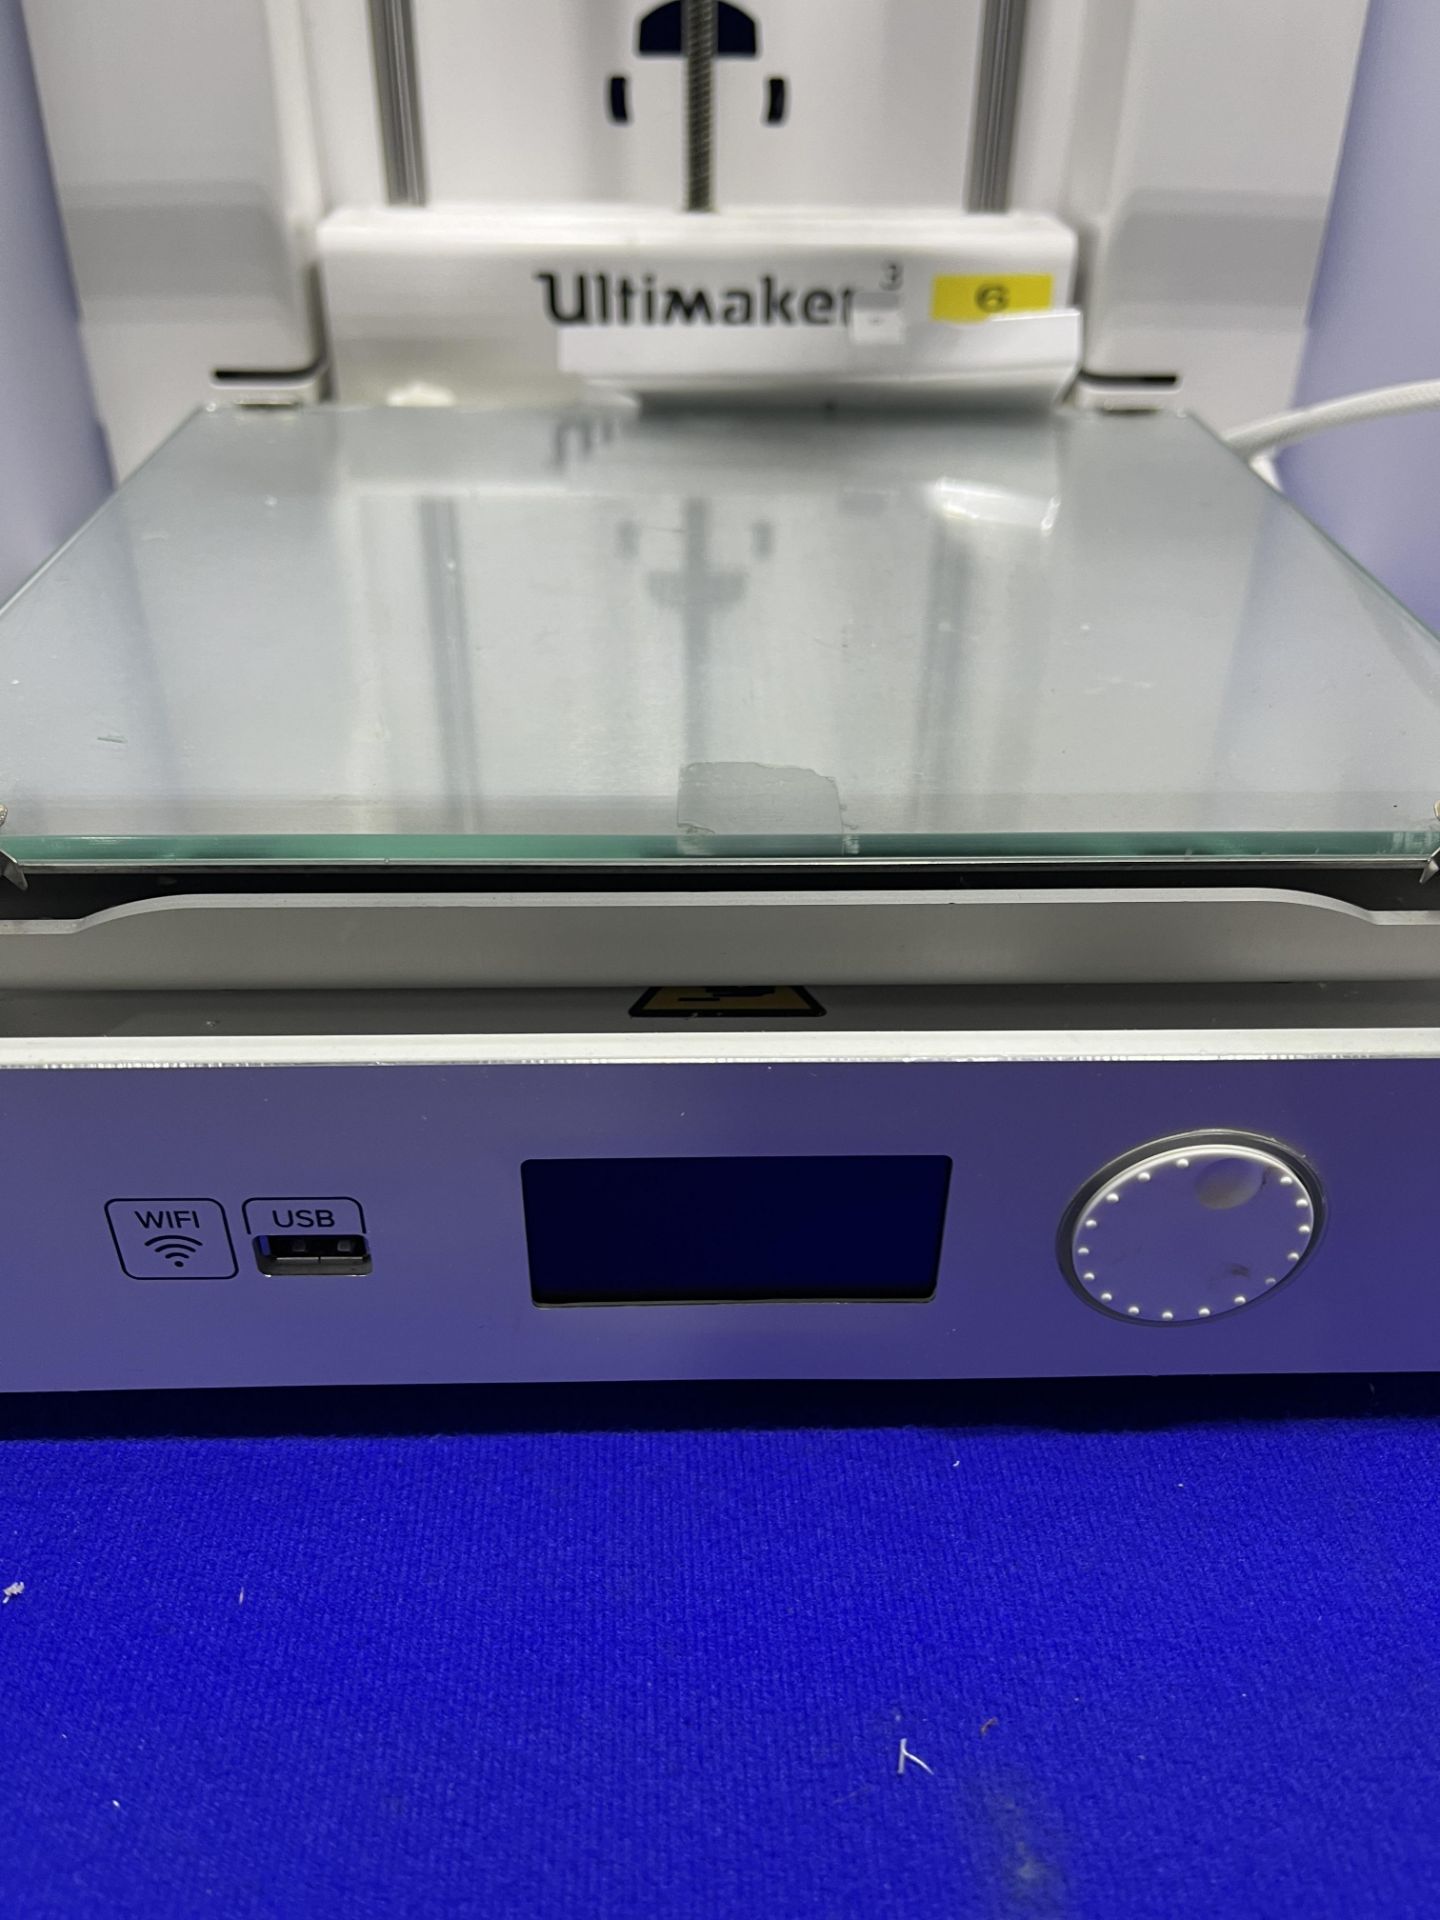 Ultimaker Model 3 3D printer - Image 3 of 5